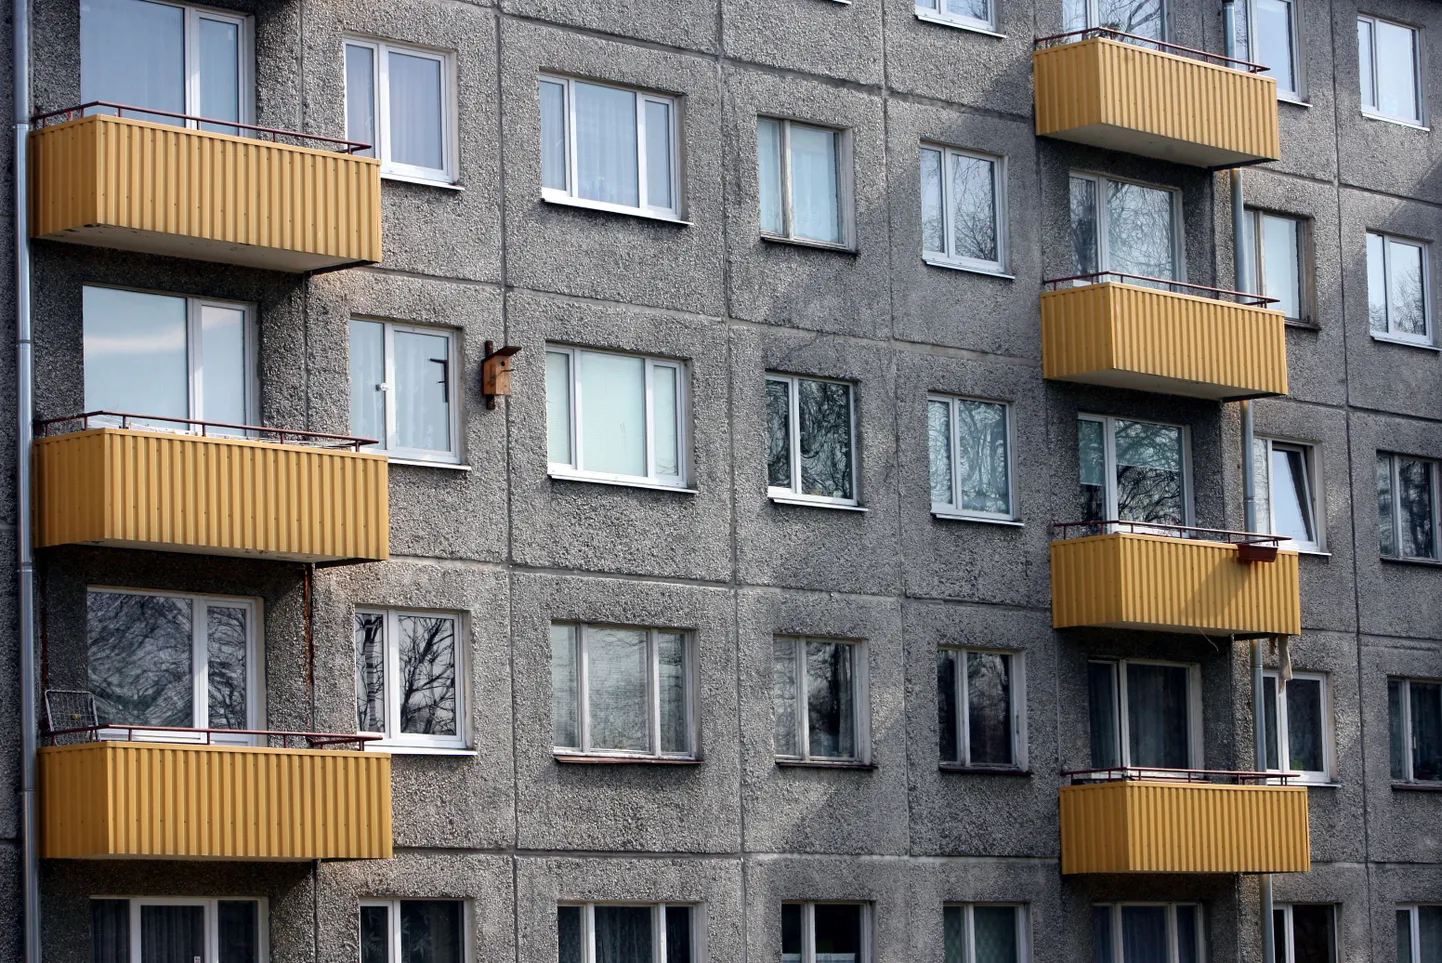 Kui varem andsid maaklerite töös tooni Kesklinn ja Tallinna uued korterid, siis tänavu on oluliselt kasvanud huvi odavamate paneelmajade korterite vastu.